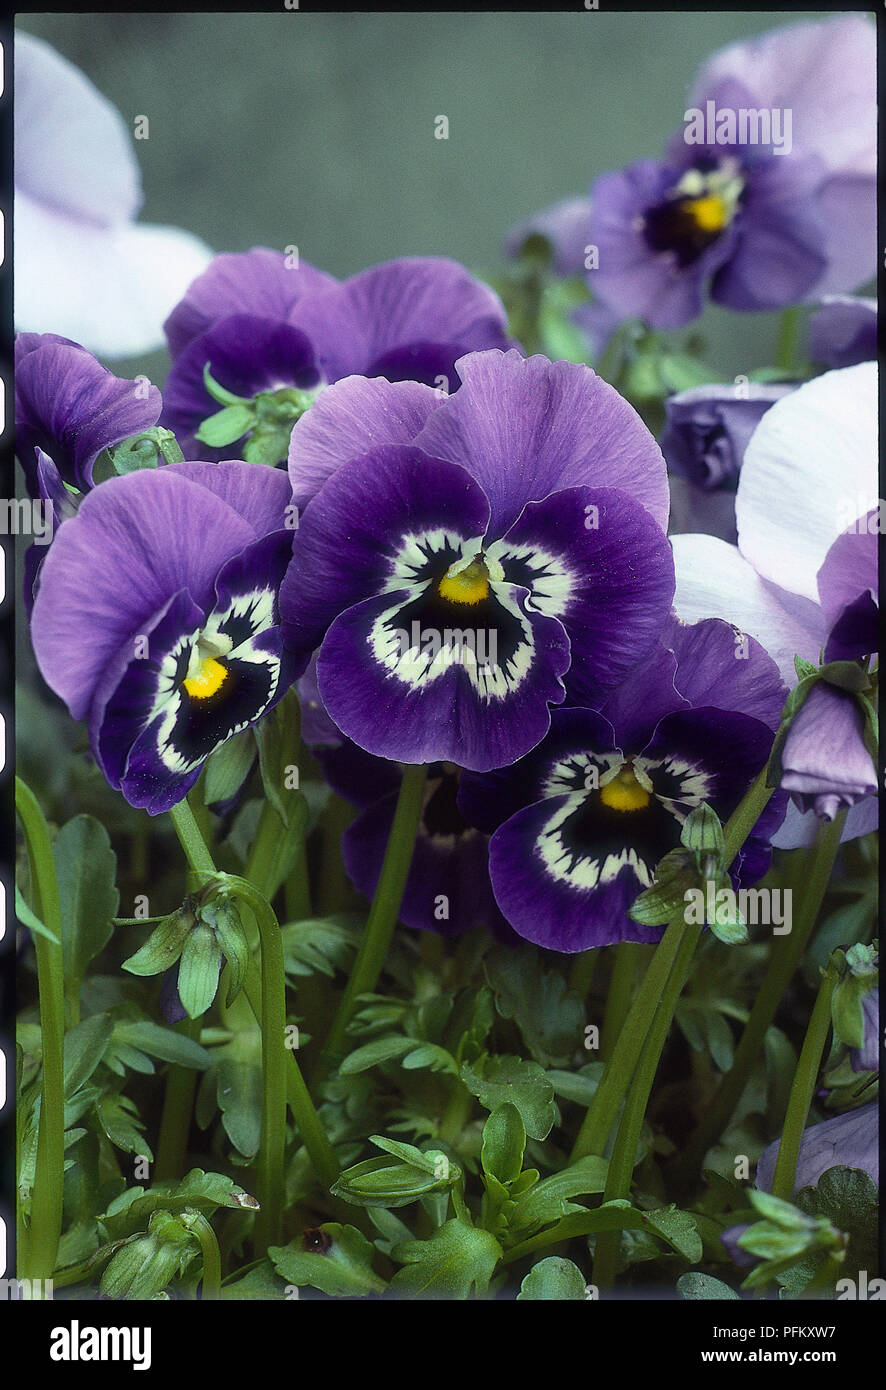 Viola x wittrockiana Joker serie, una folte e diffusione perenne, di solito cresciuto come un annuale o biennale, con grandi, arrotondate, 5-petalled, violaceo-fiori blu, bianco e nero con volti e gli occhi gialli. Foto Stock